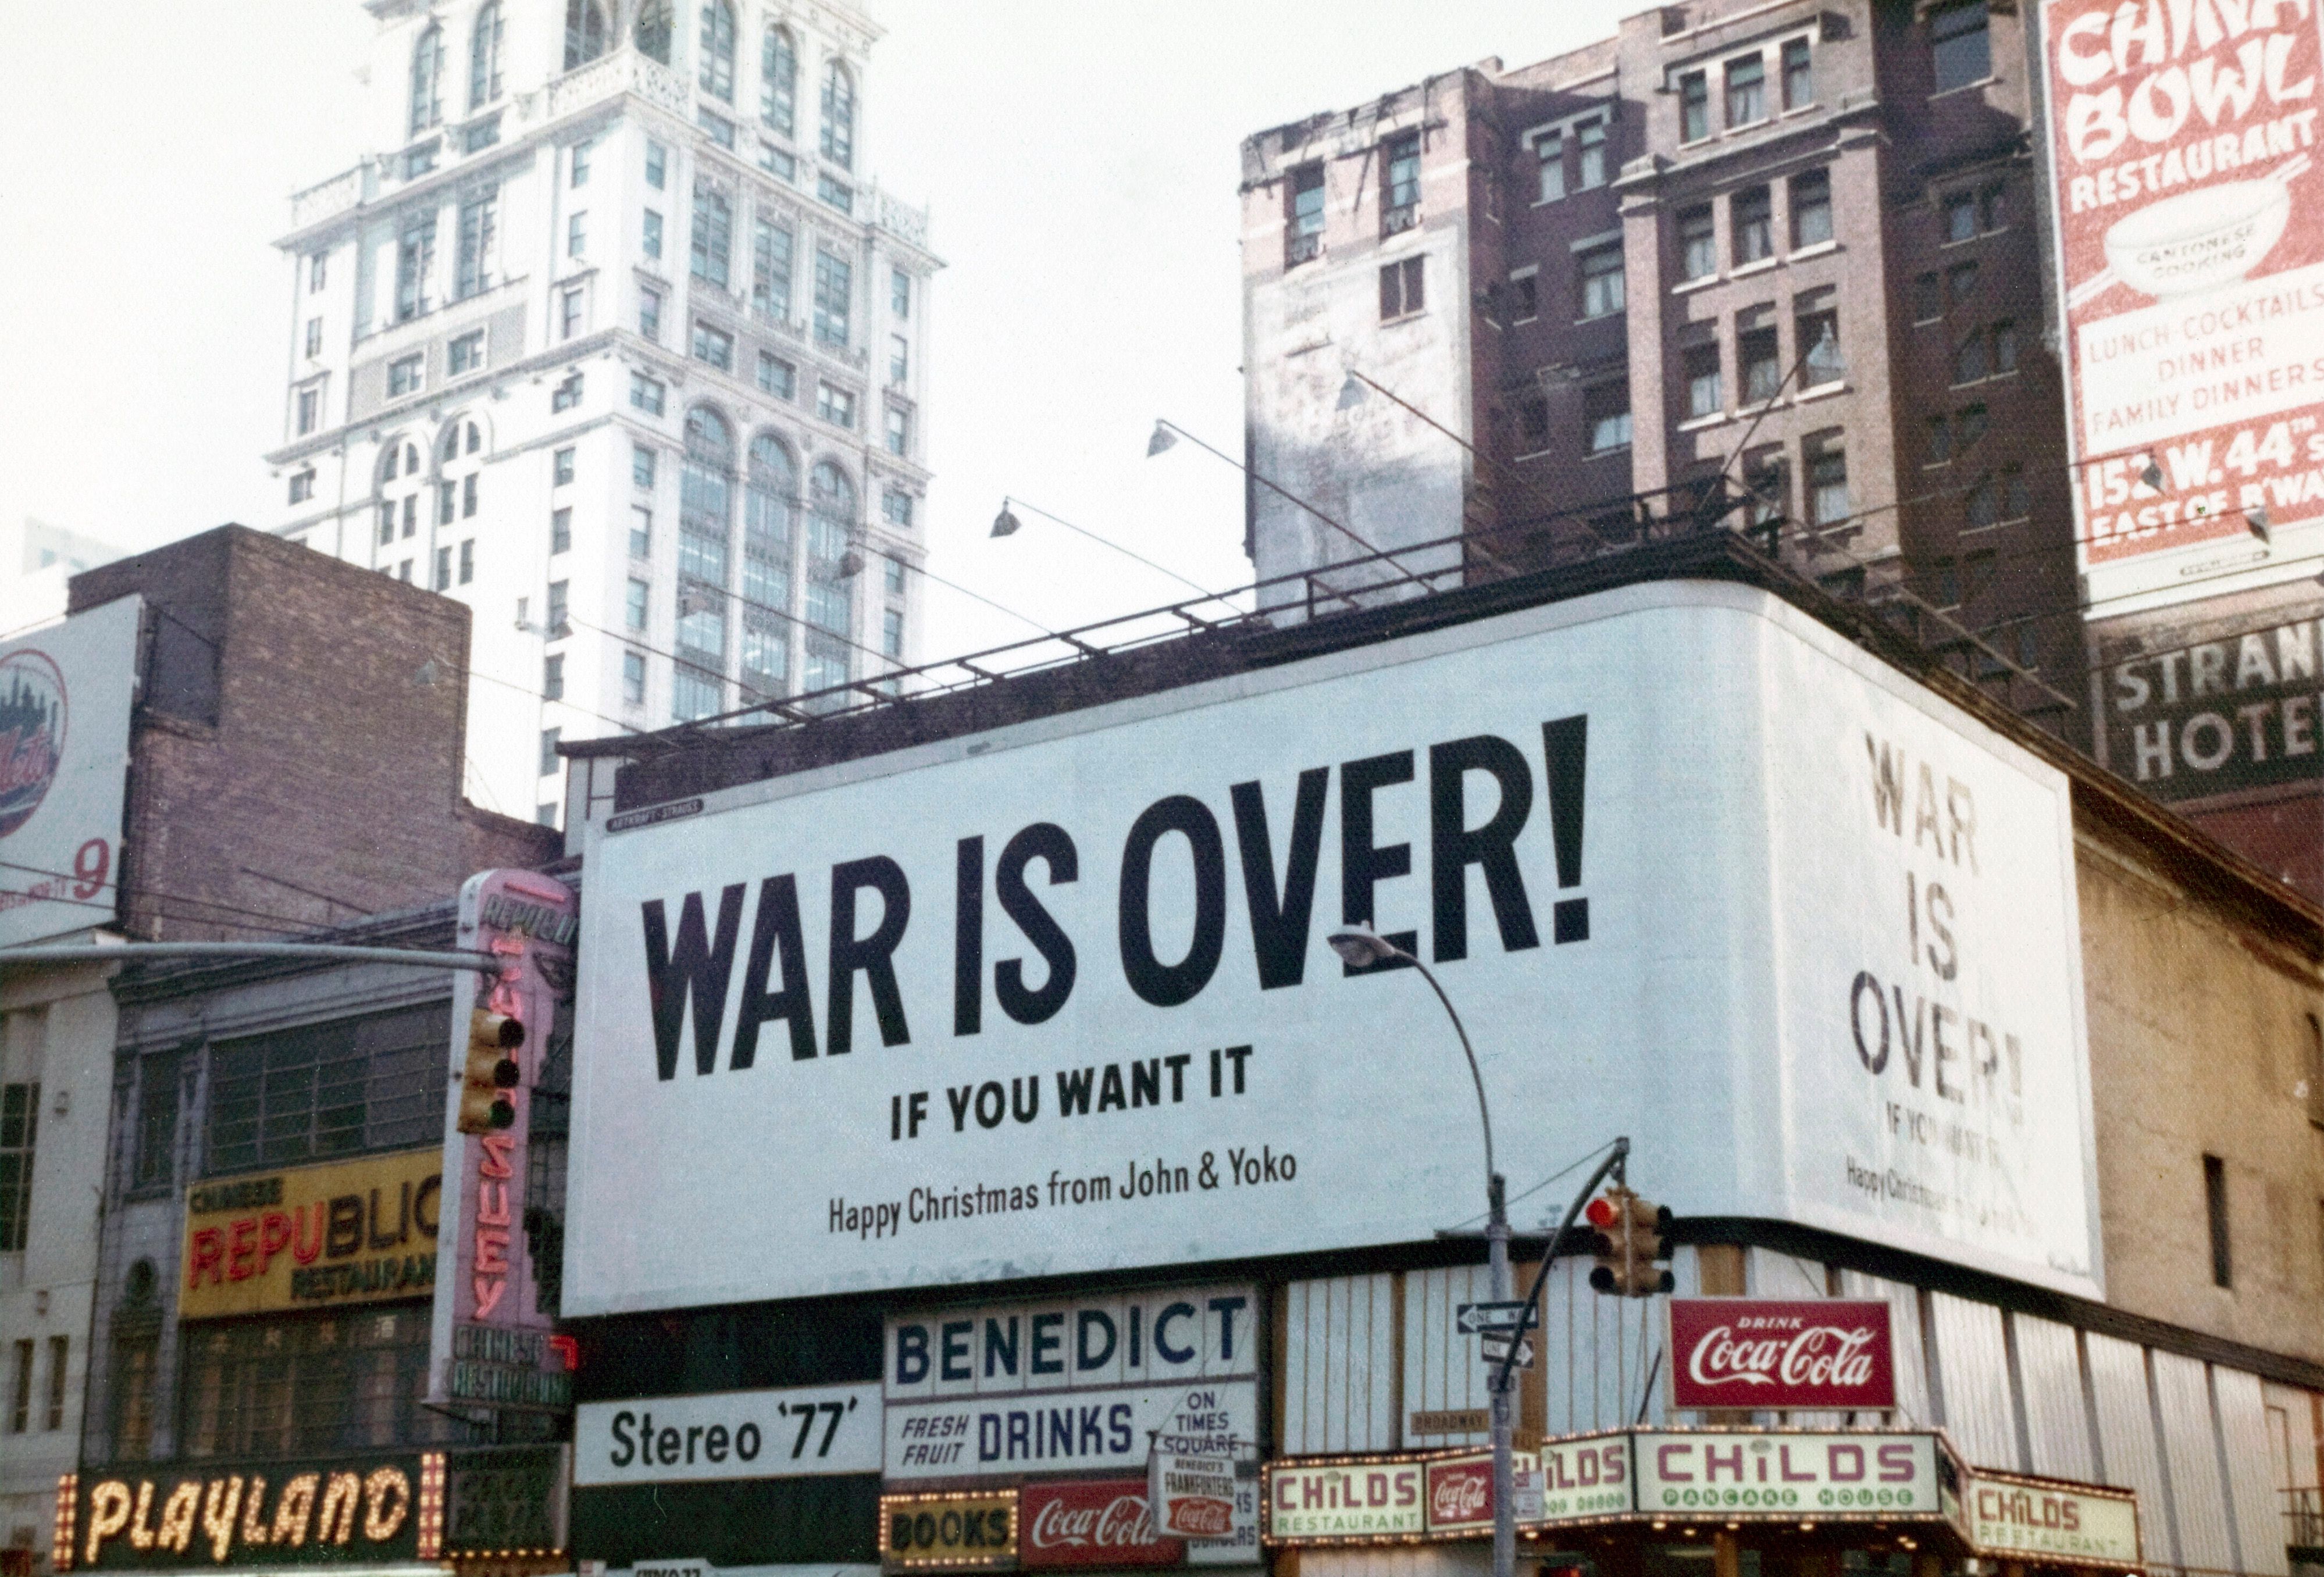 John Lennon og Yoko Onos kampanje ”War is over! If you want it” på Times Square, 1969